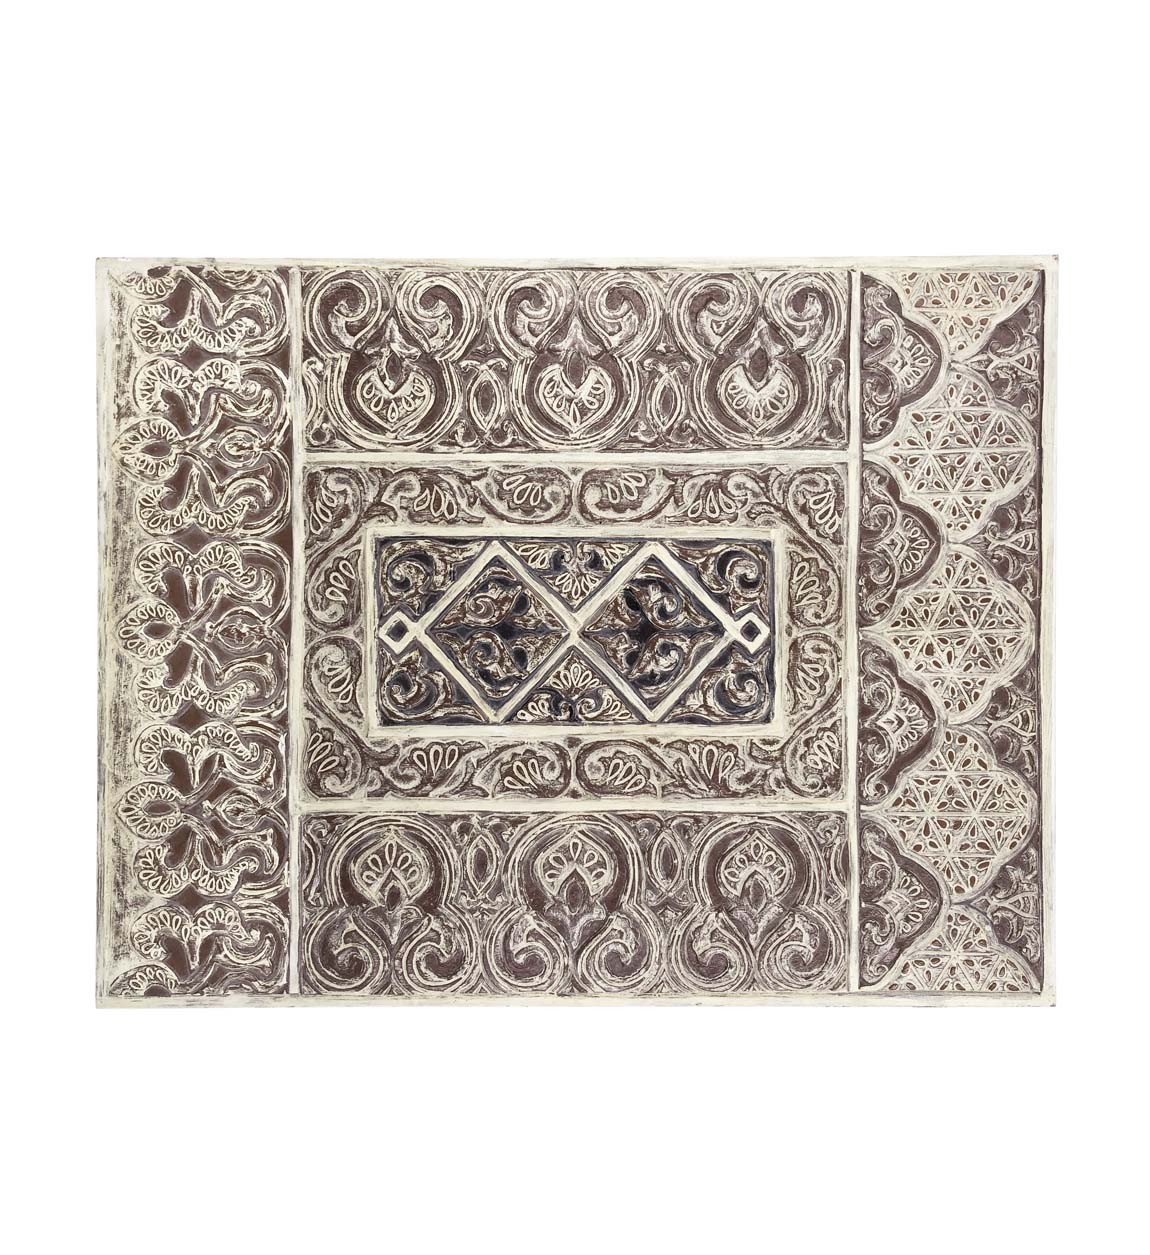 Levně Estila Dekorační nástěnný panel Moletto obdélníkového tvaru ve stylu etno ve světlých hnědých odstínech 90cm